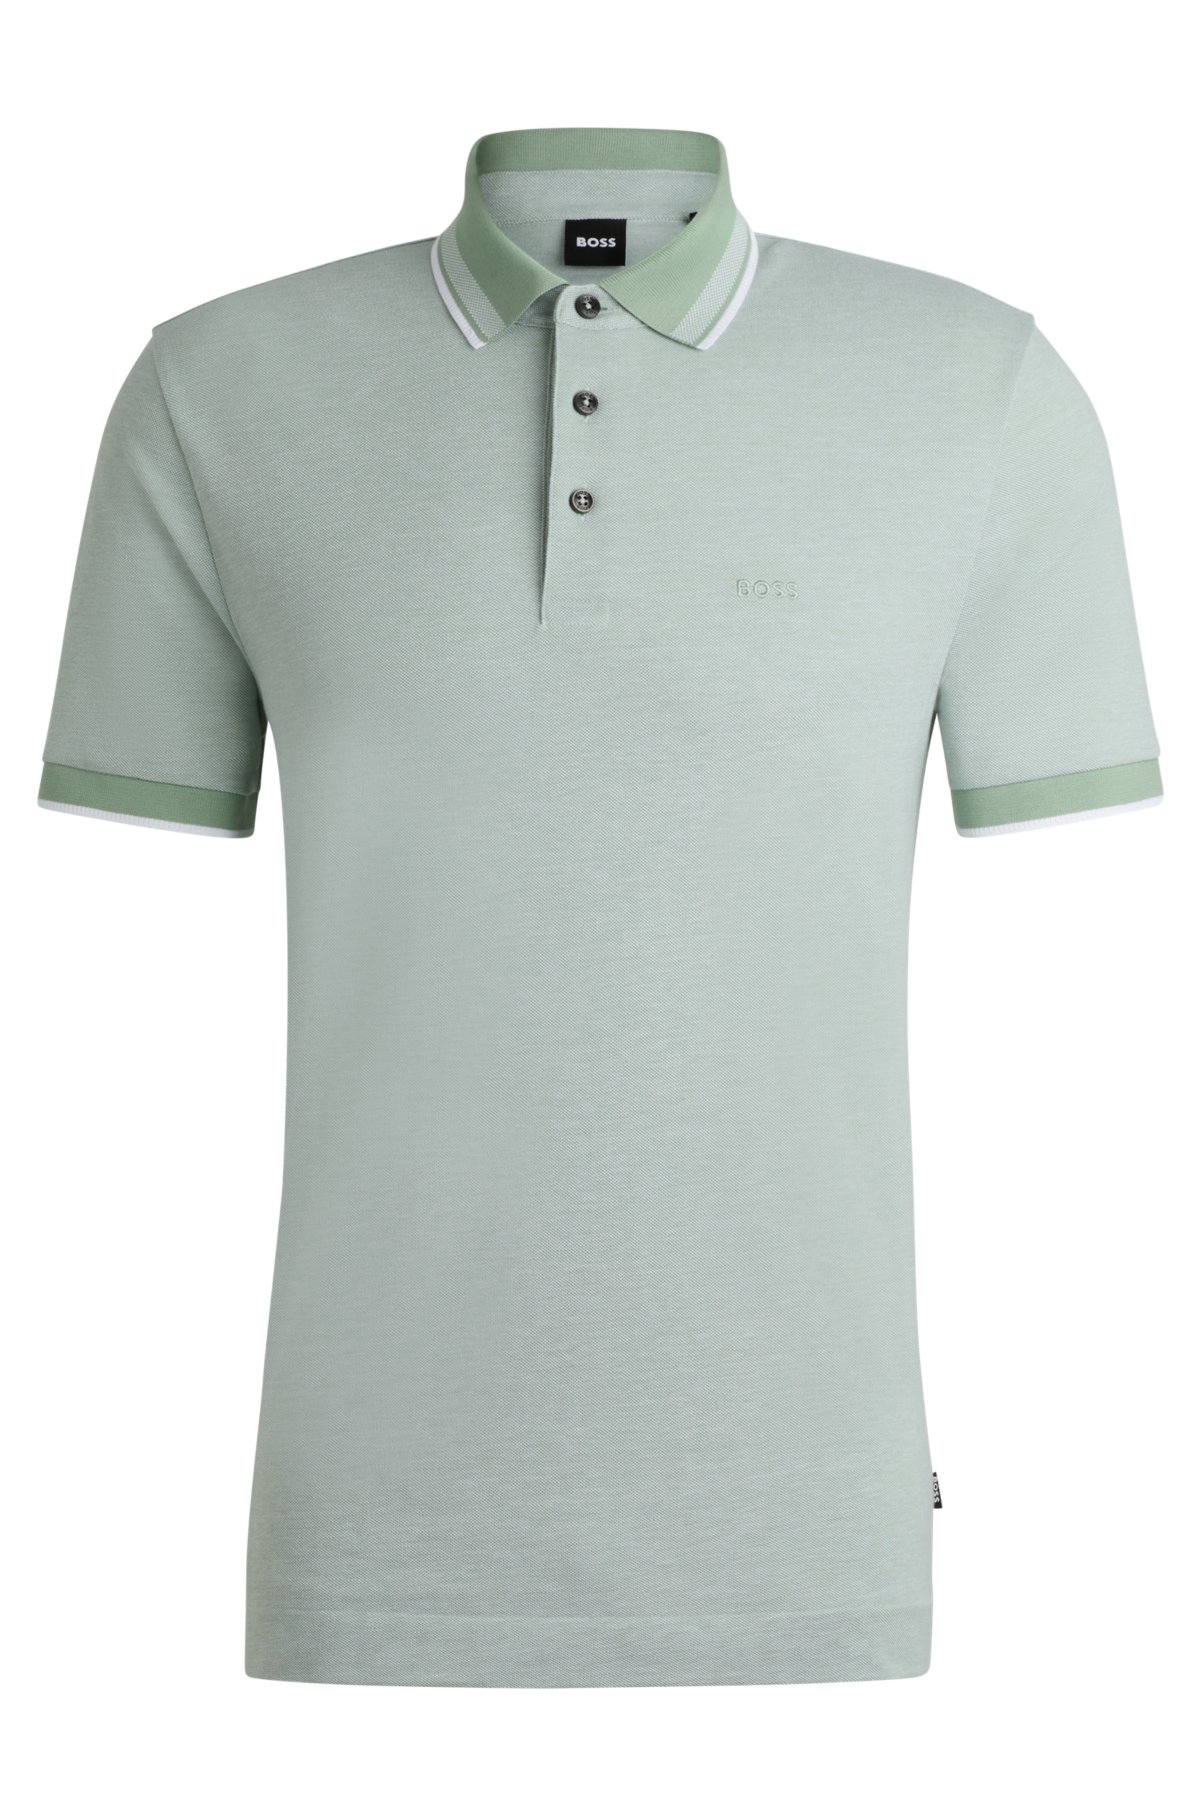 Oxford-cotton-piqué polo shirt with logo detail, Light Green